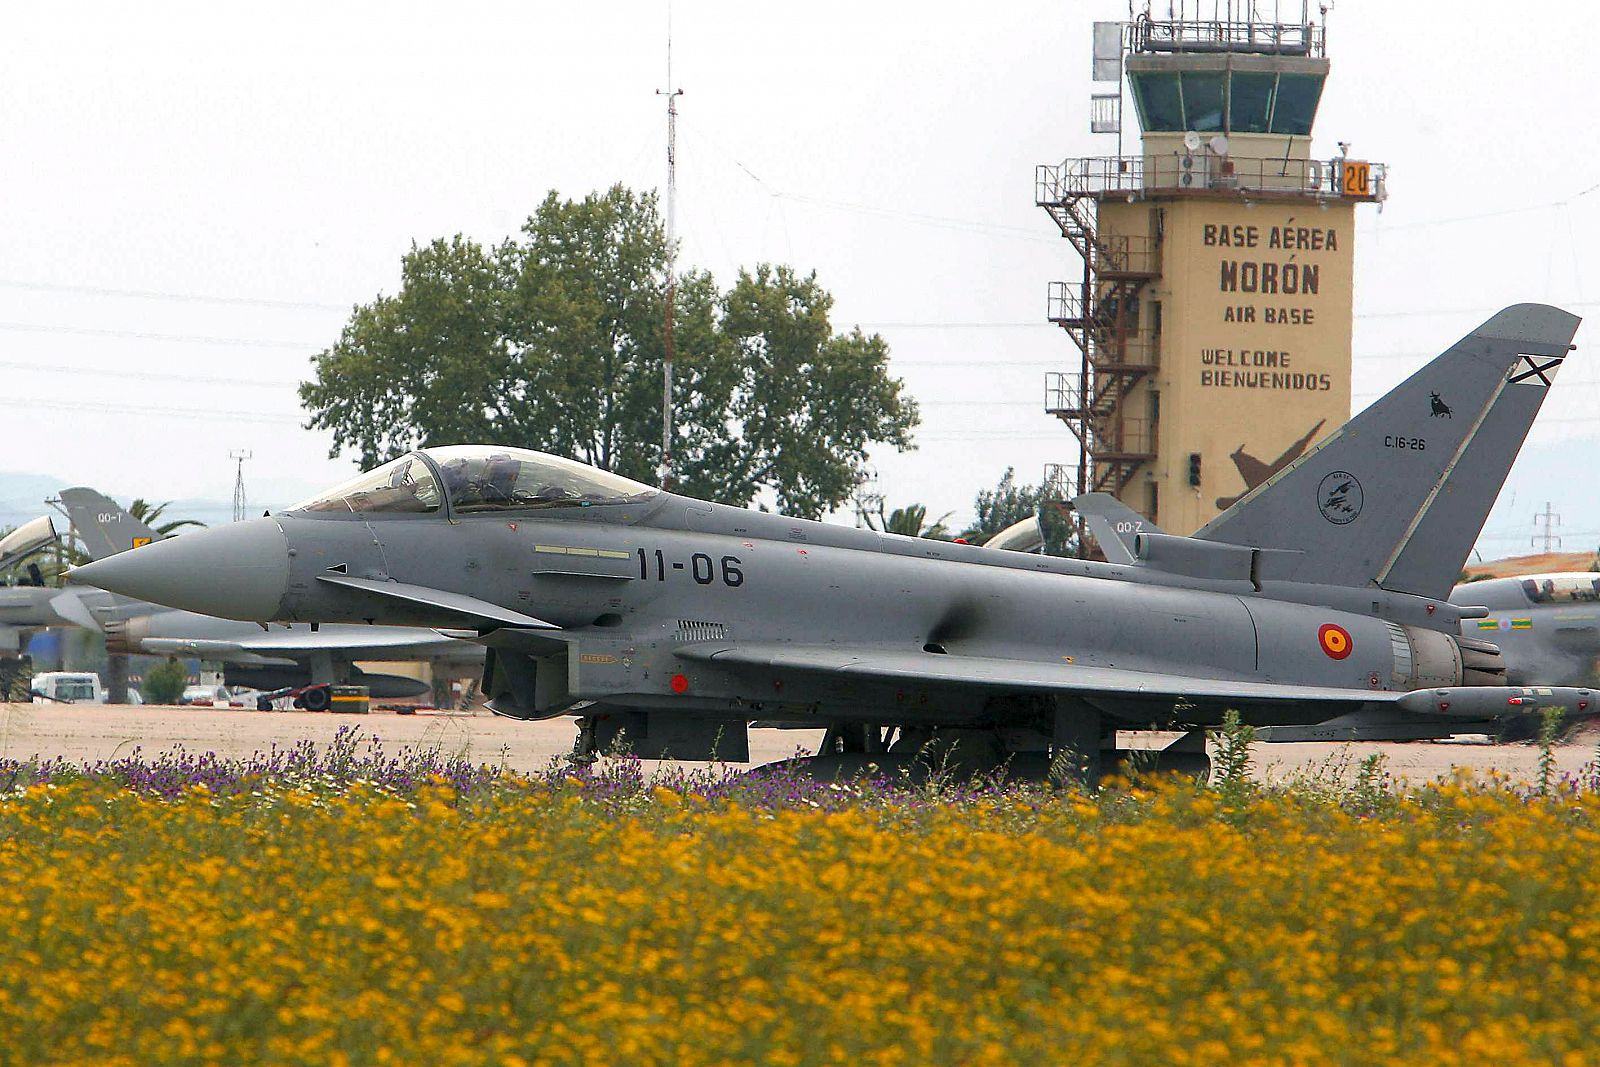 Fallece un militar árabe al estrellarse un Eurofighter en la base de Morón en Sevilla